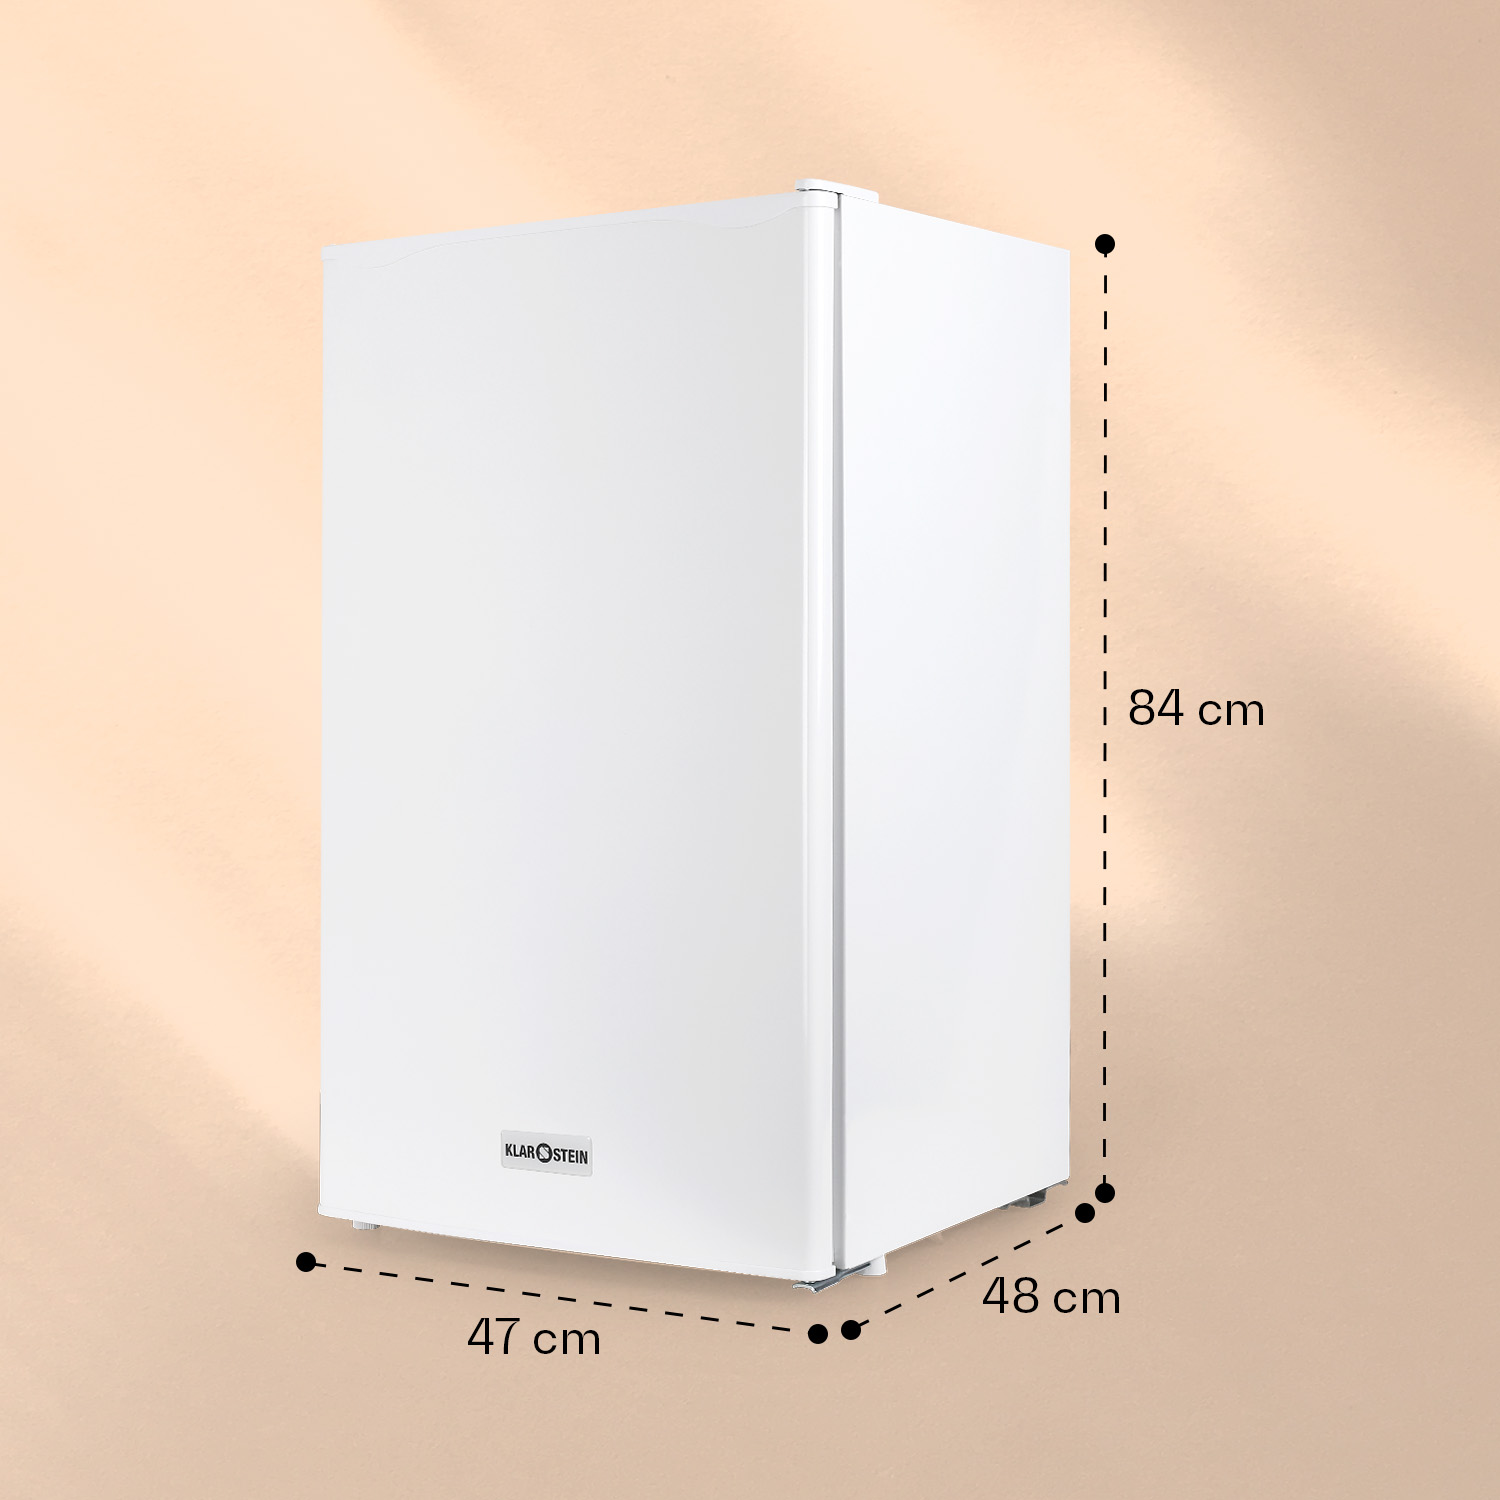 KLARSTEIN 90L1-WH Mini-Kühlschrank (F, cm 83 Weiß) hoch